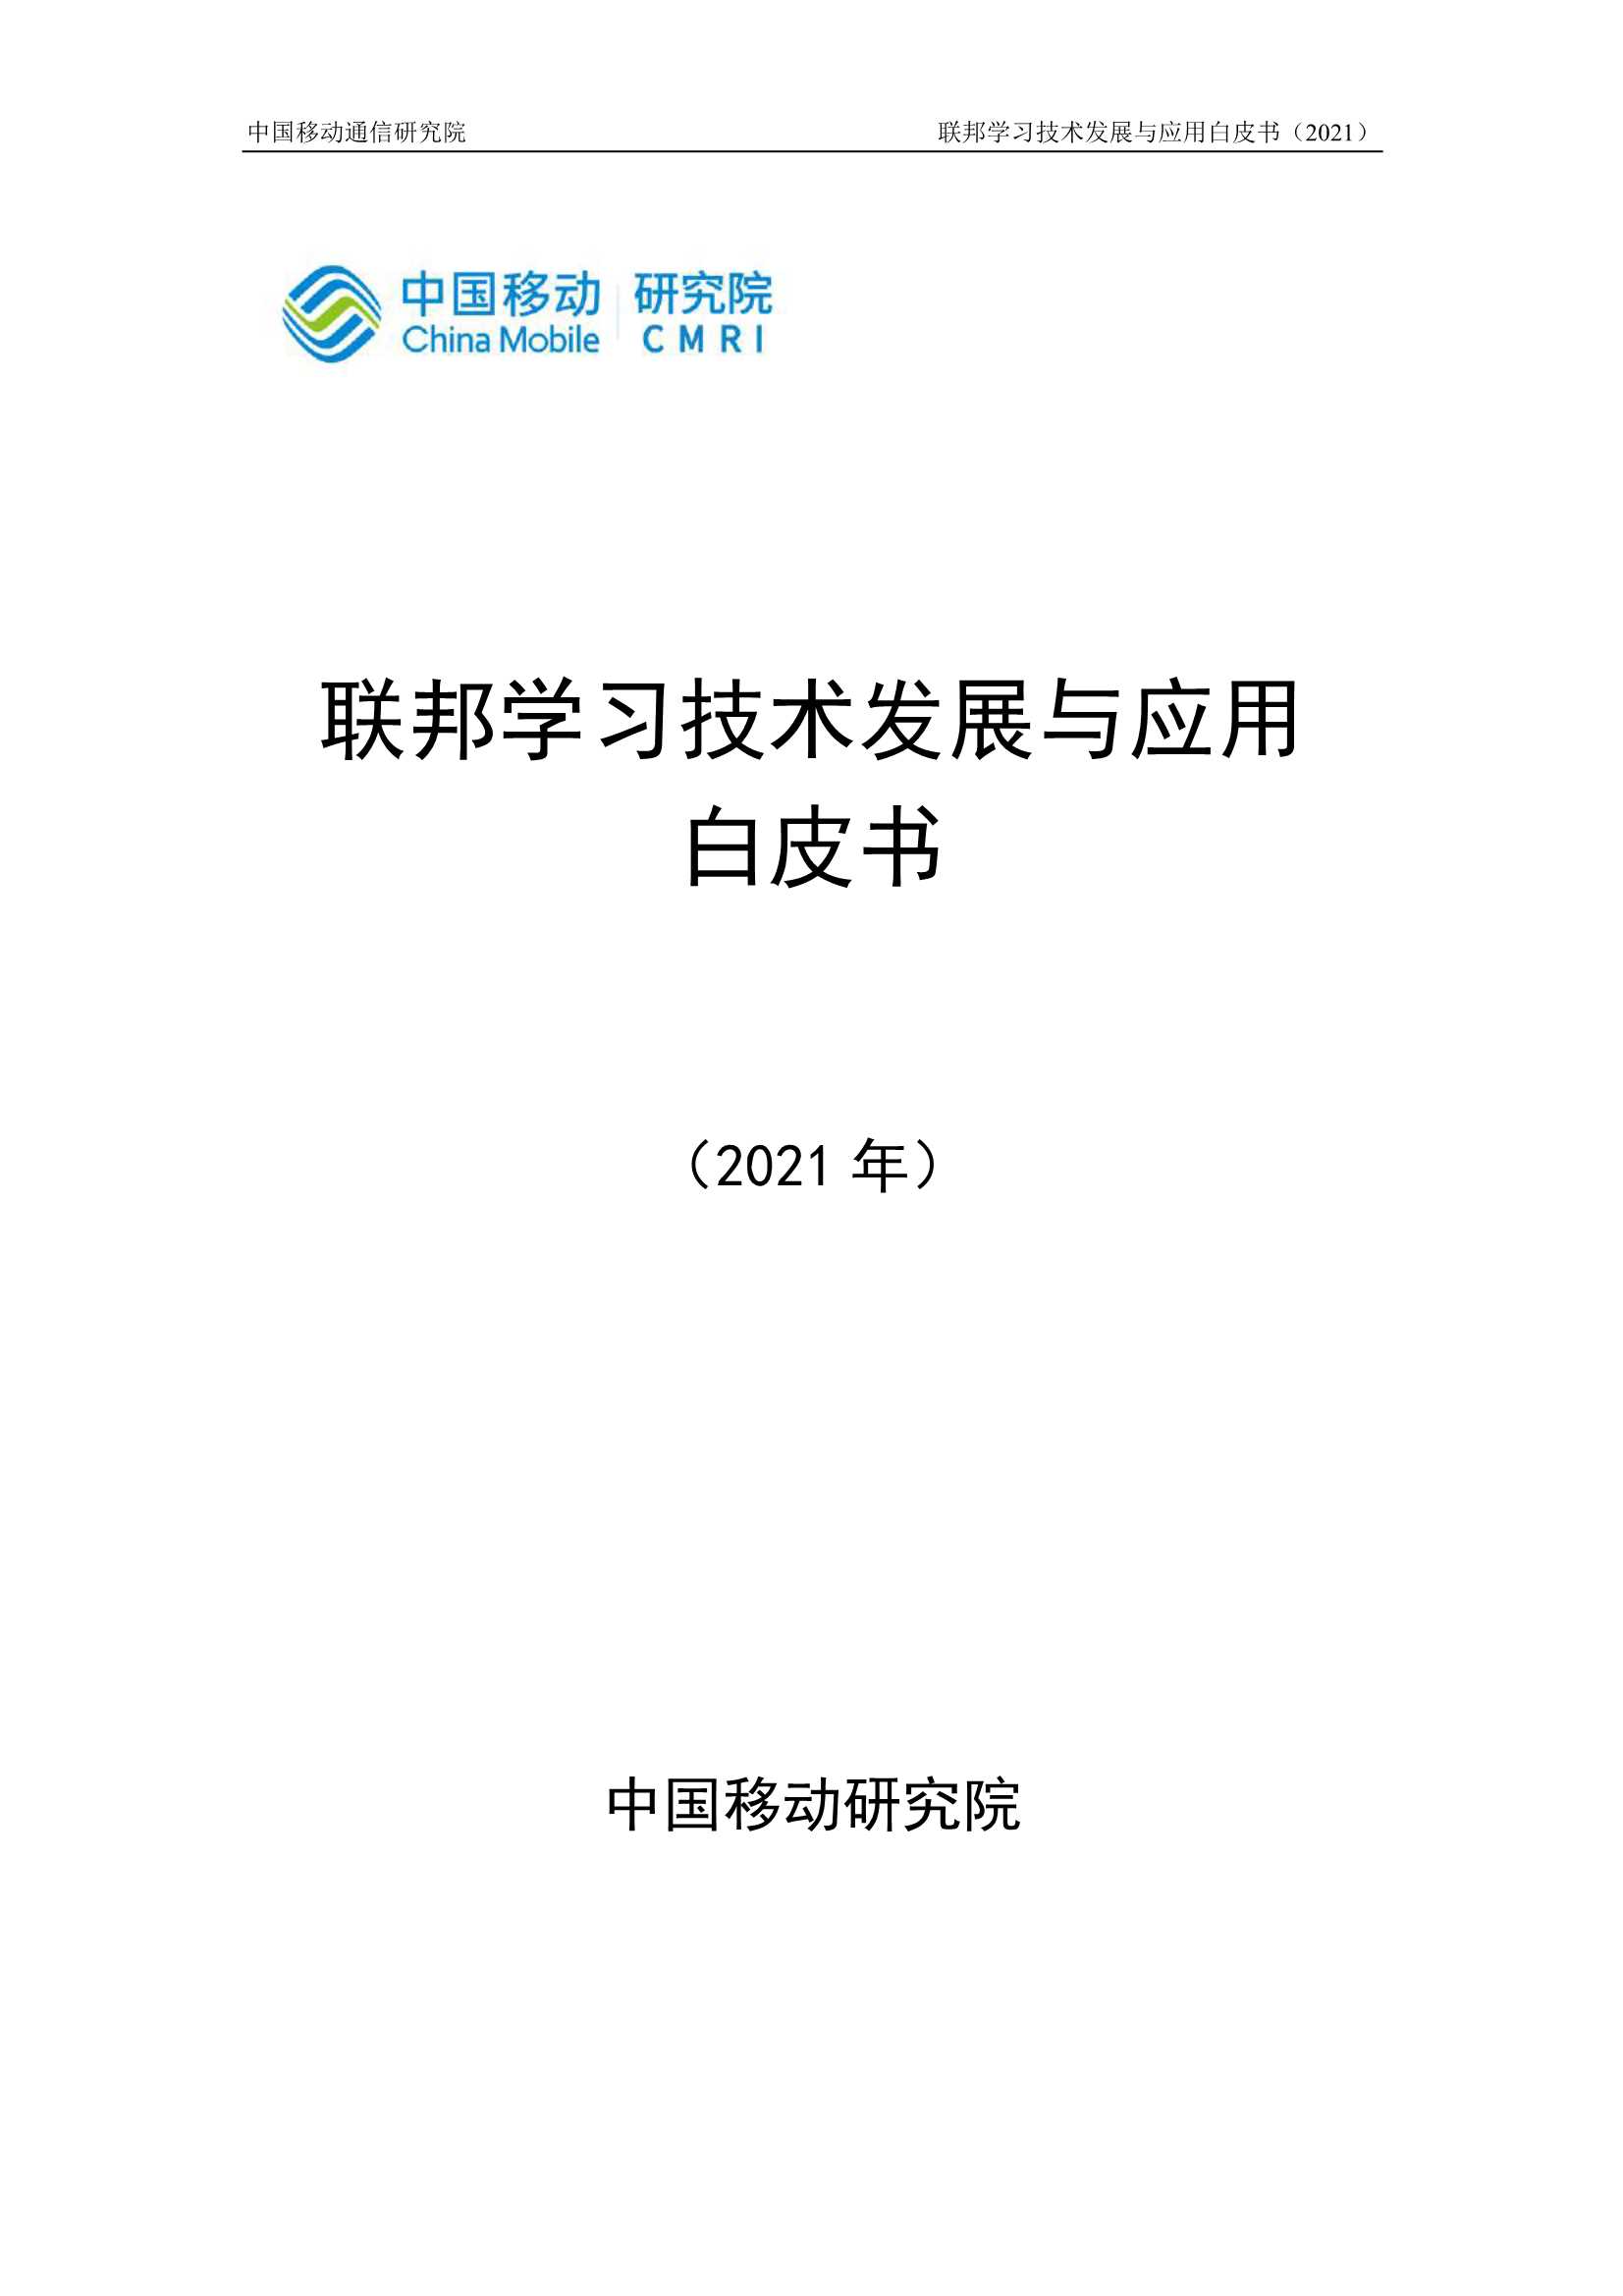 中国移动-联邦学习技术发展与应用白皮书-2021.05-20页